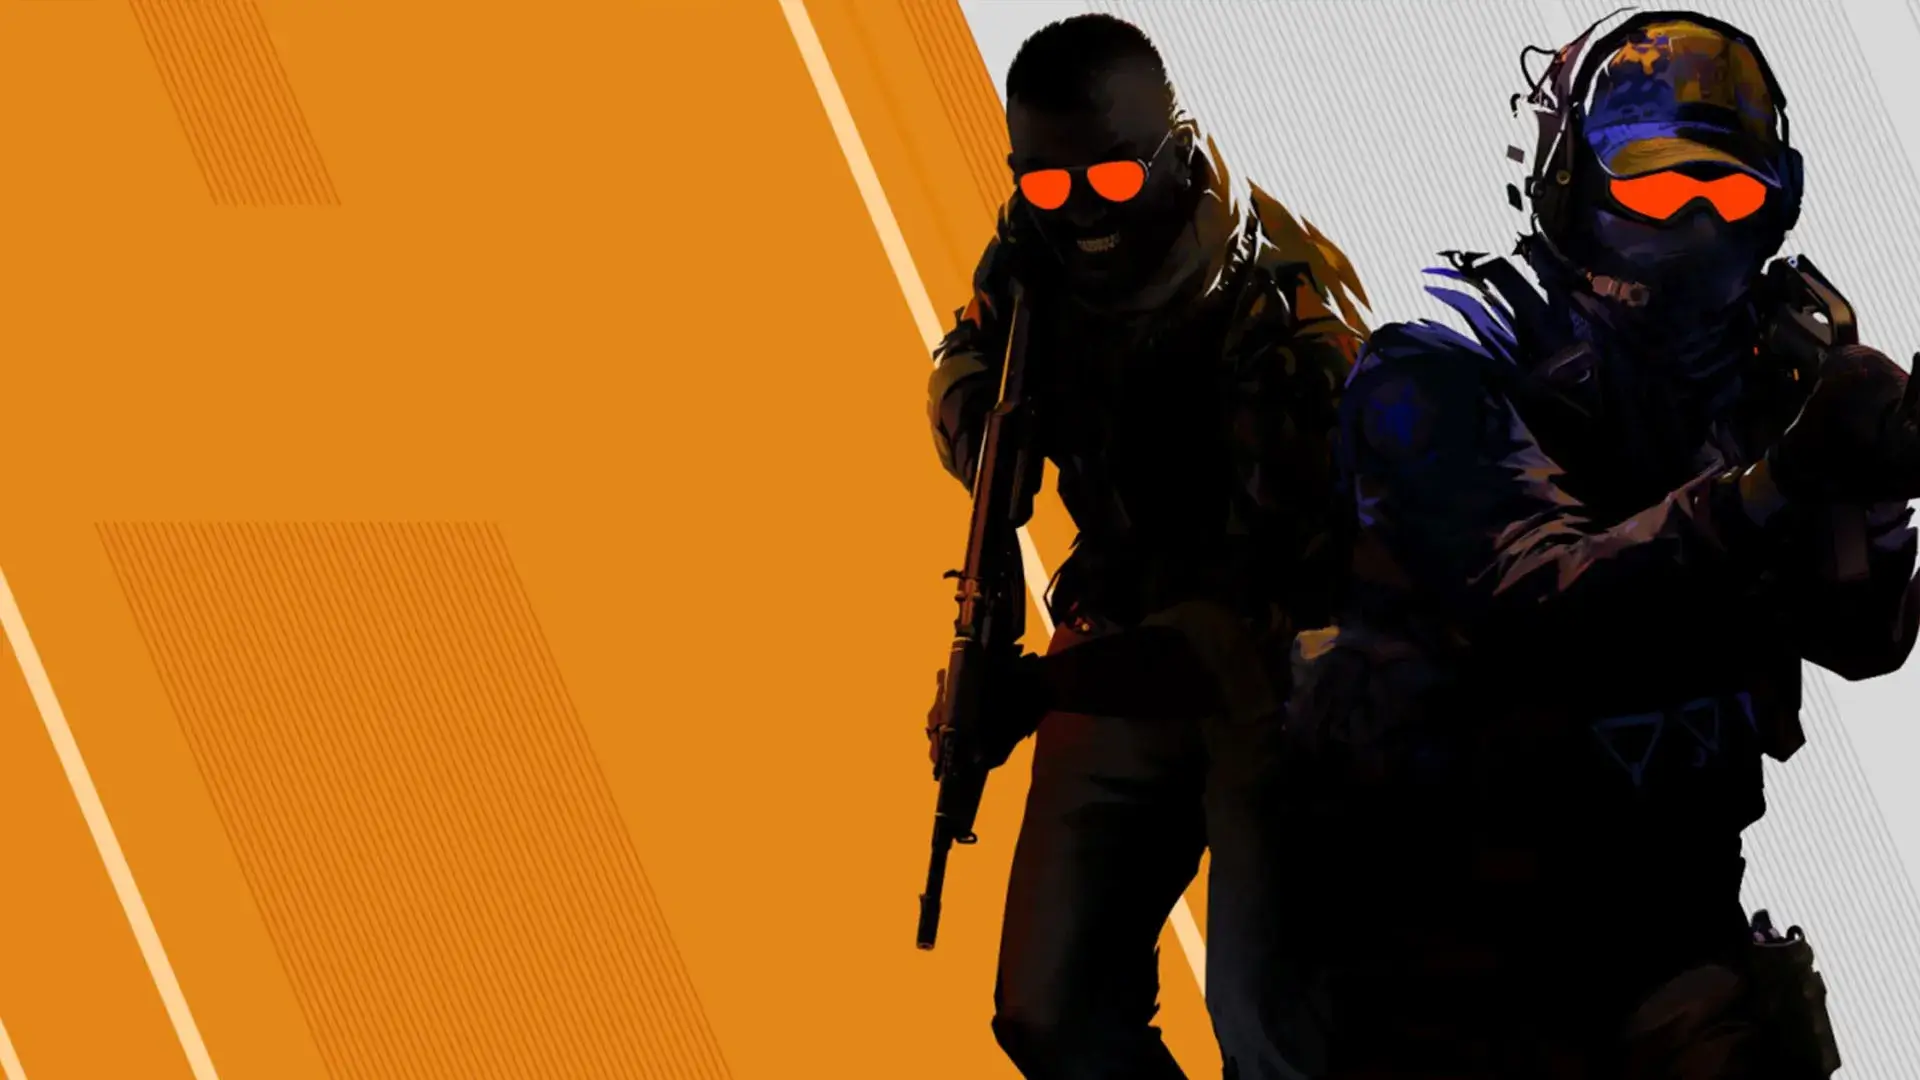 Counter-Strike 2 e mais de 20 novos jogos são adicionados ao NVIDIA GeForce  Now 